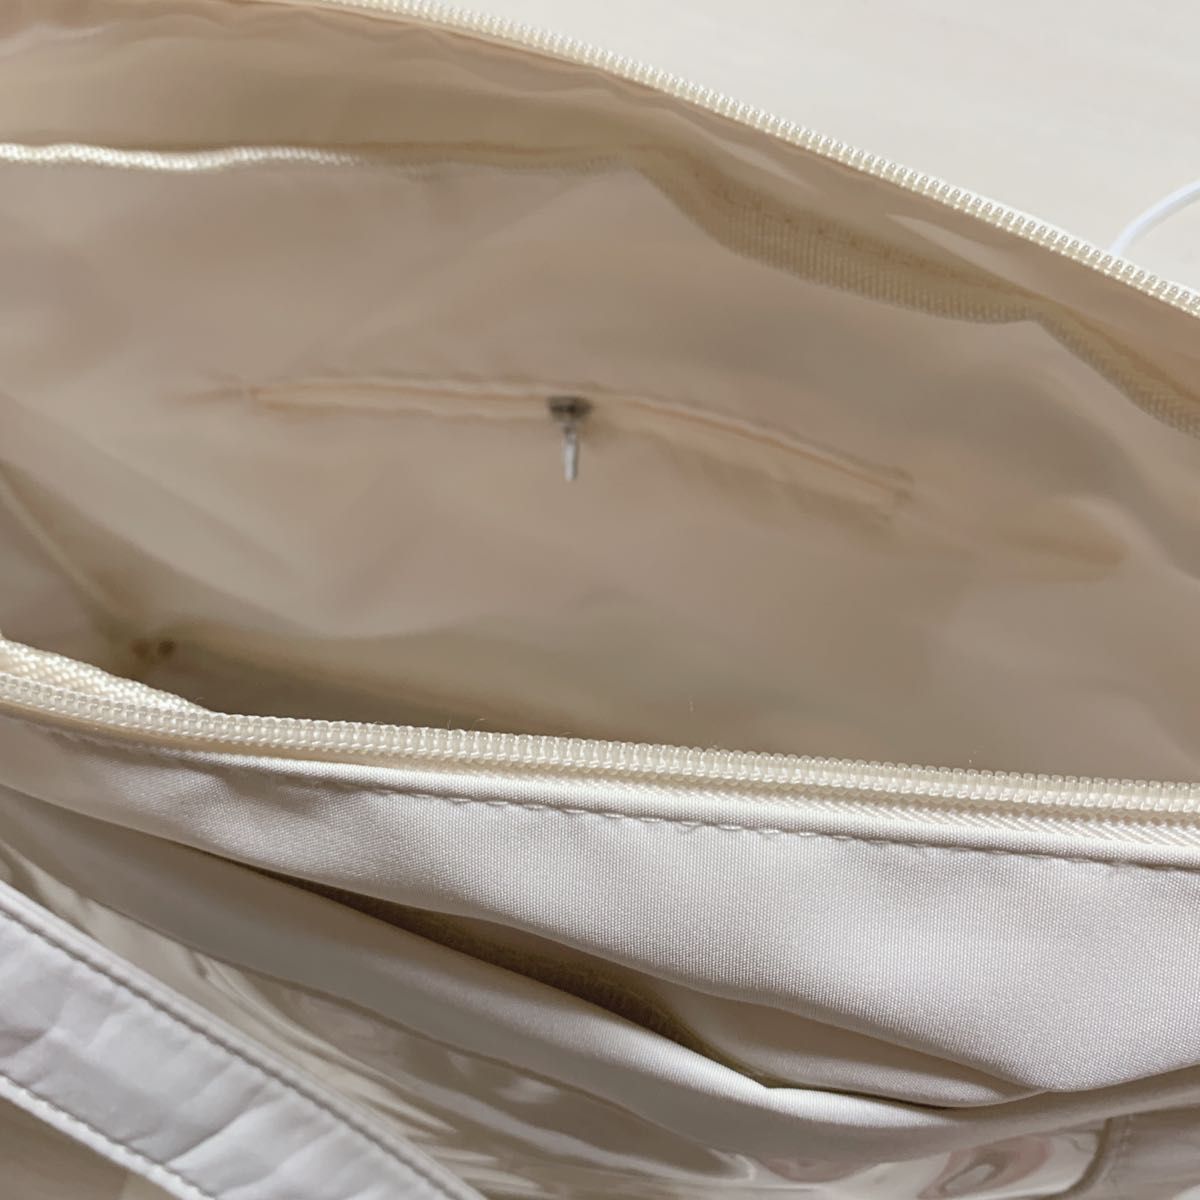 ホワイト 白 痛バッグ A4  痛バ 推し オタ活 クリア 透明 トートバッグ ショルダーバッグ  レディース ハンドバッグ